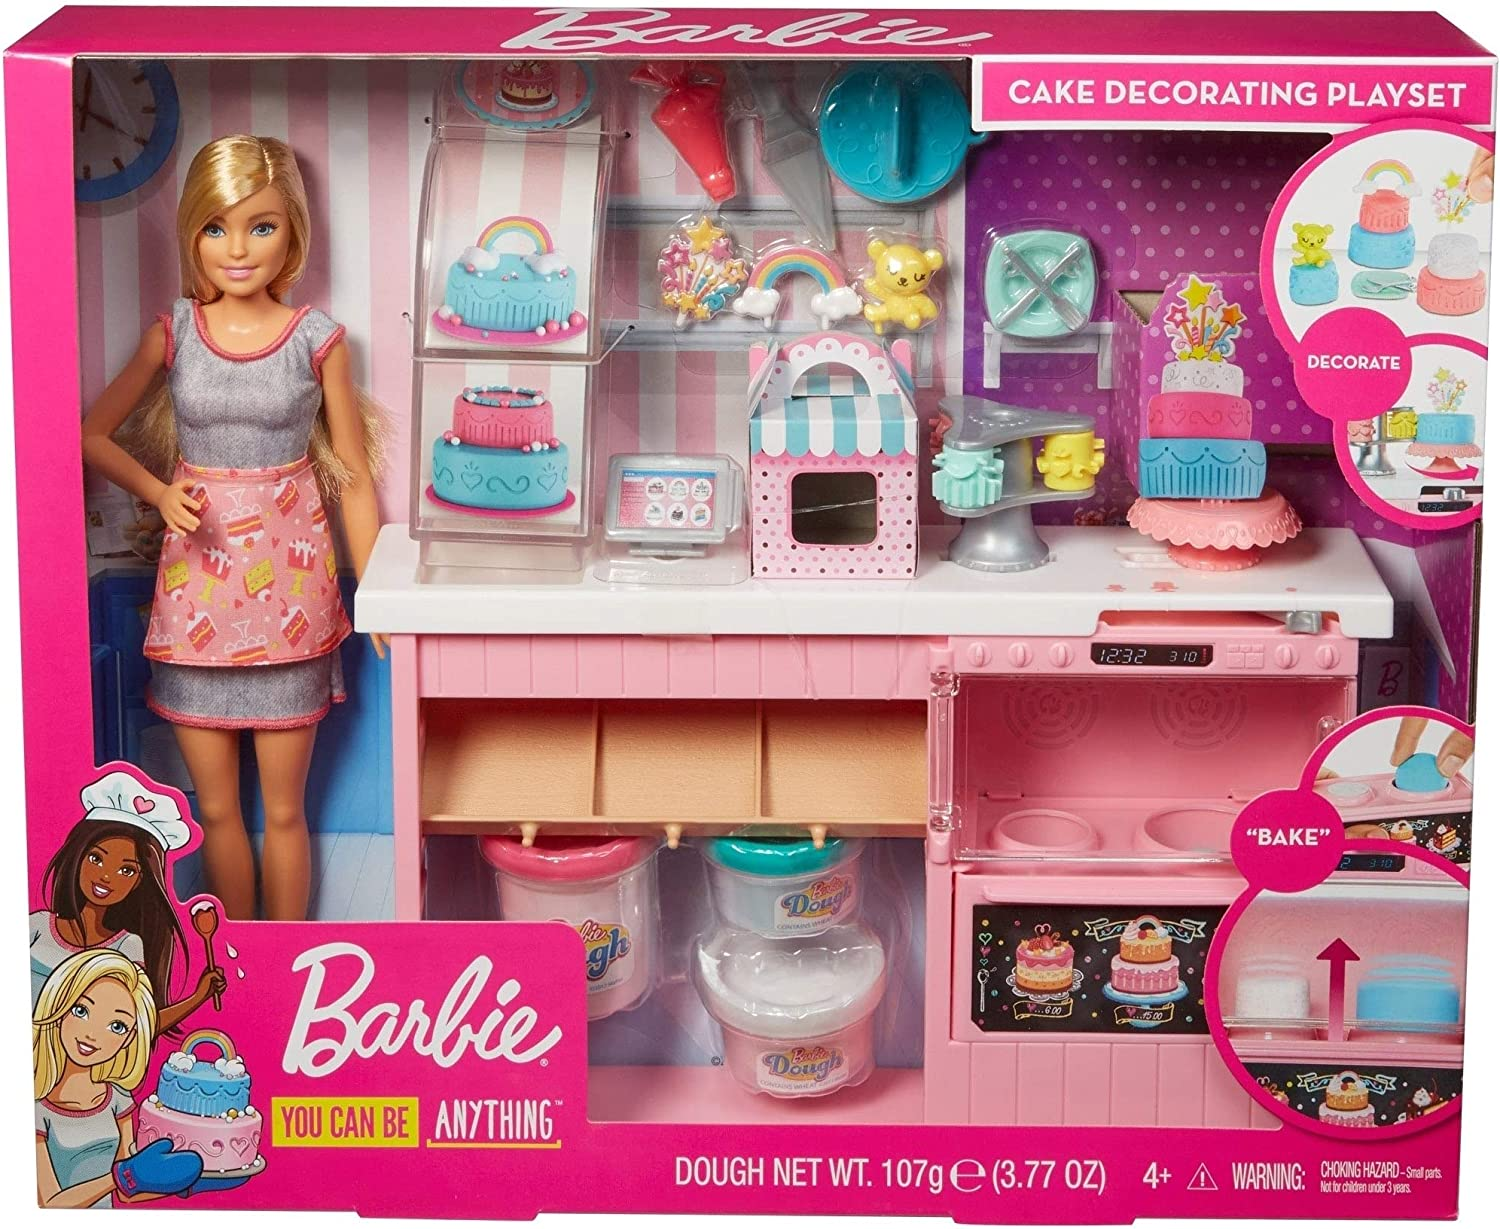 Набор игровой Barbie кондитерский магазин gfp59. Набор Барби кондитерский магазин. Набор Barbie продуктовый магазин Малибу, 29 см, ckp77. Куклы Барби плейсет. Игрушки набор куклы